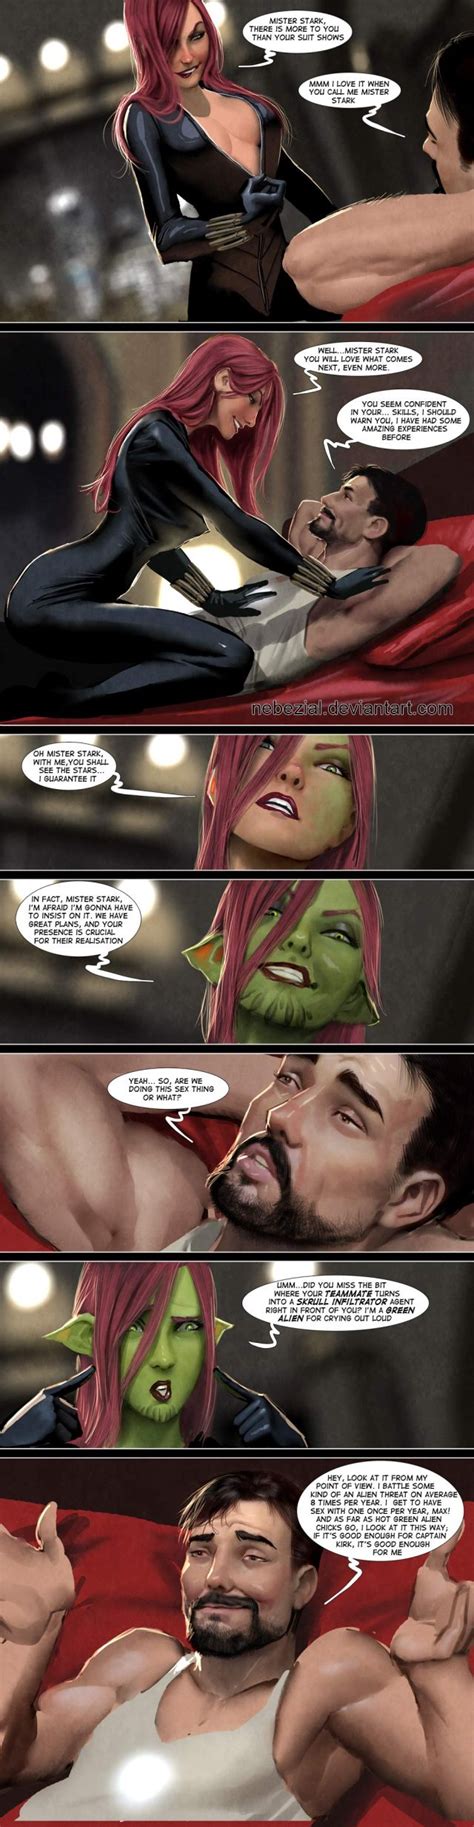 Tony Stark Professional Asshole Superhero Humor And Funny Pics